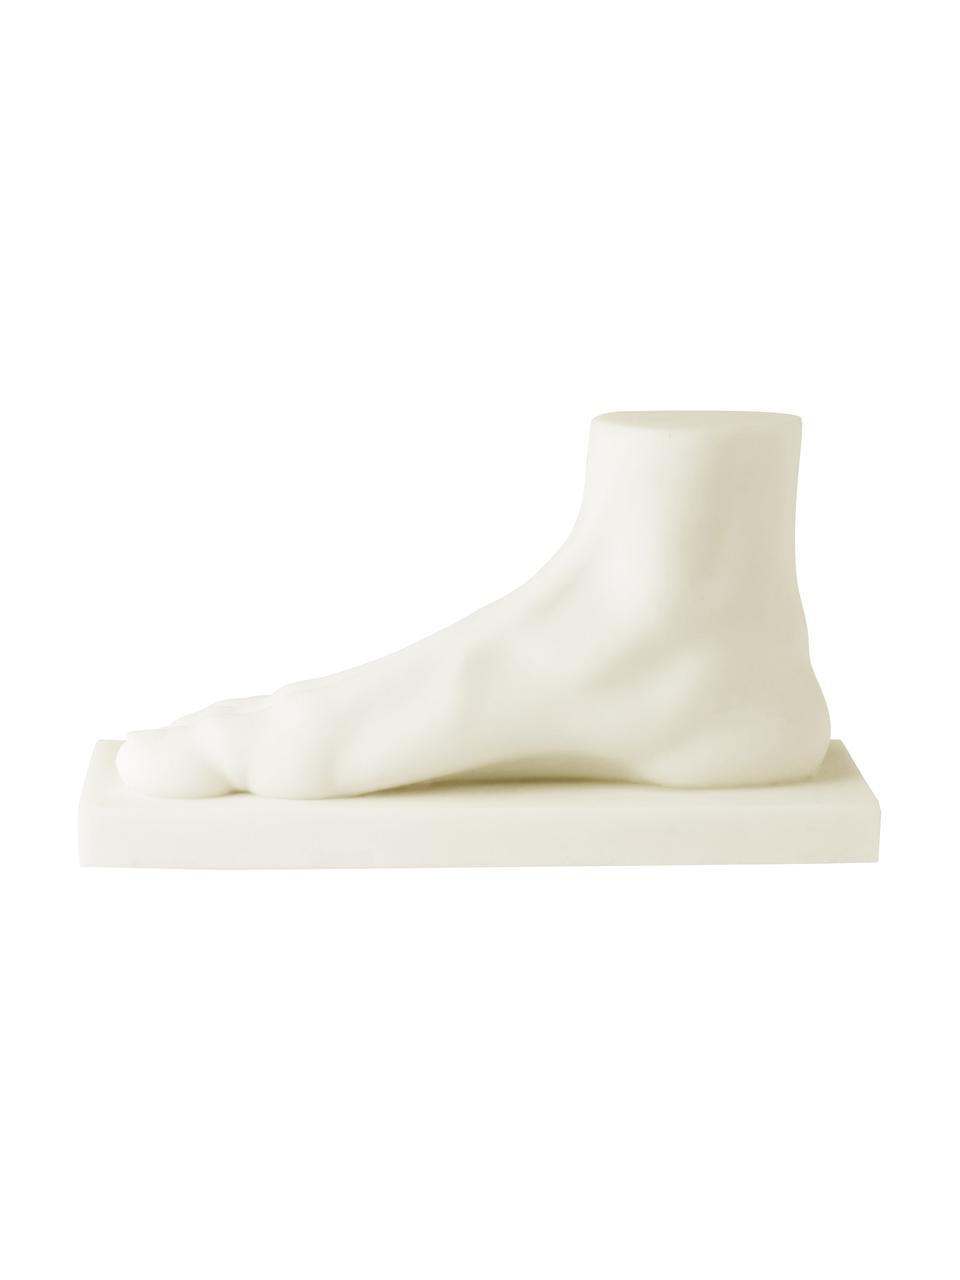 Oggetto decorativo Foot, Resina, polvere di marmo, Bianco crema, Larg. 28 x Alt. 15 cm